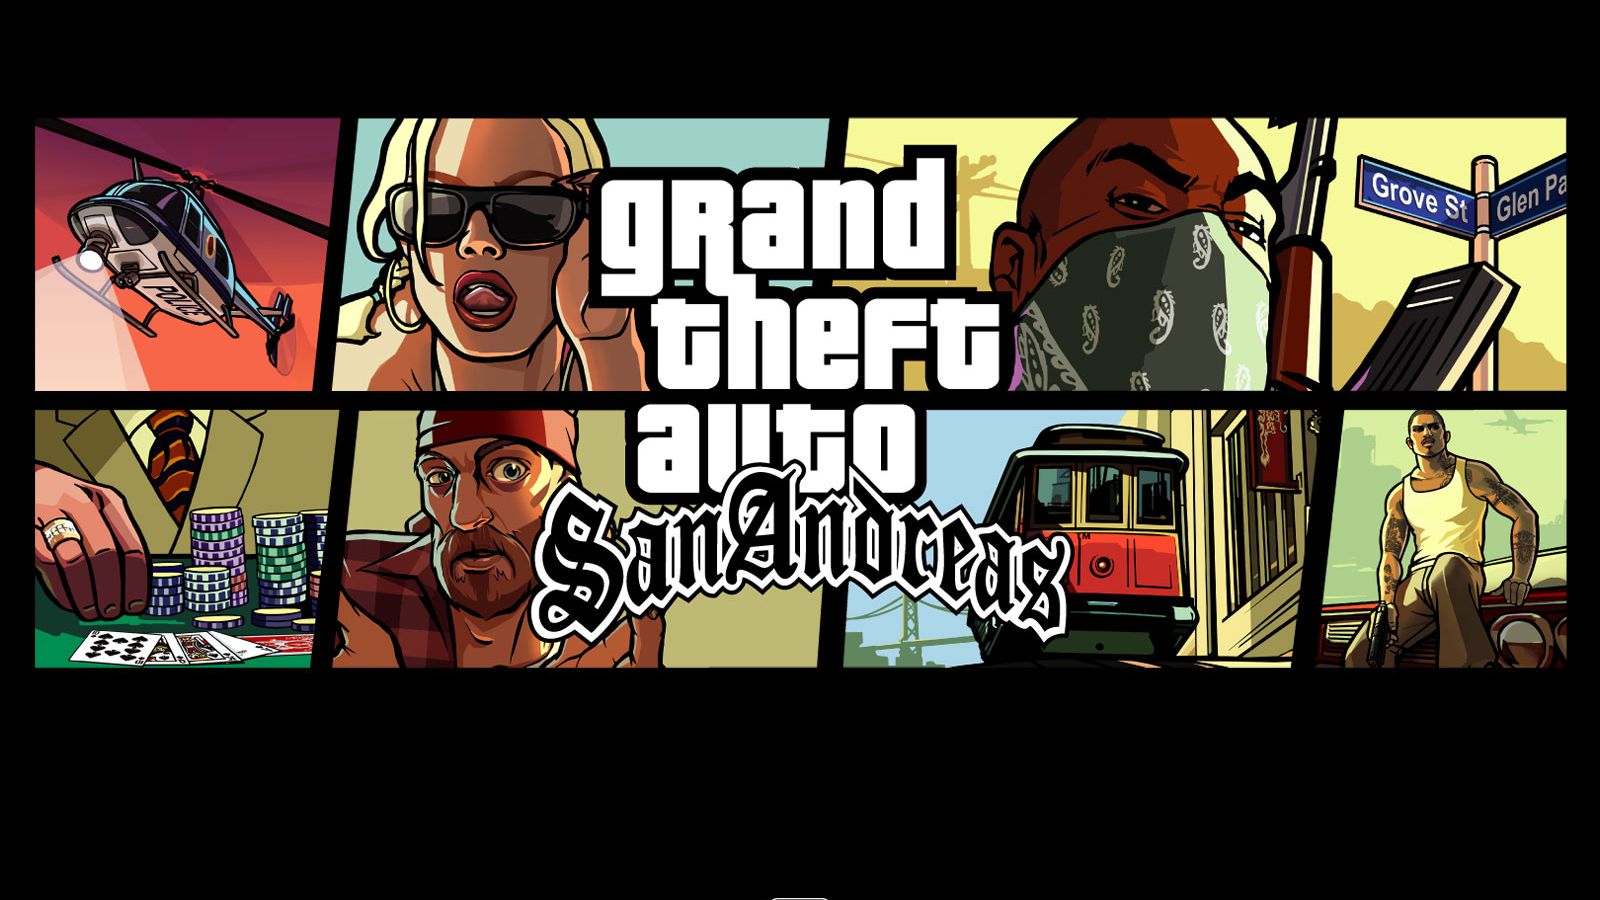 Grand Theft Auto: San Andreas é lancado para Android 